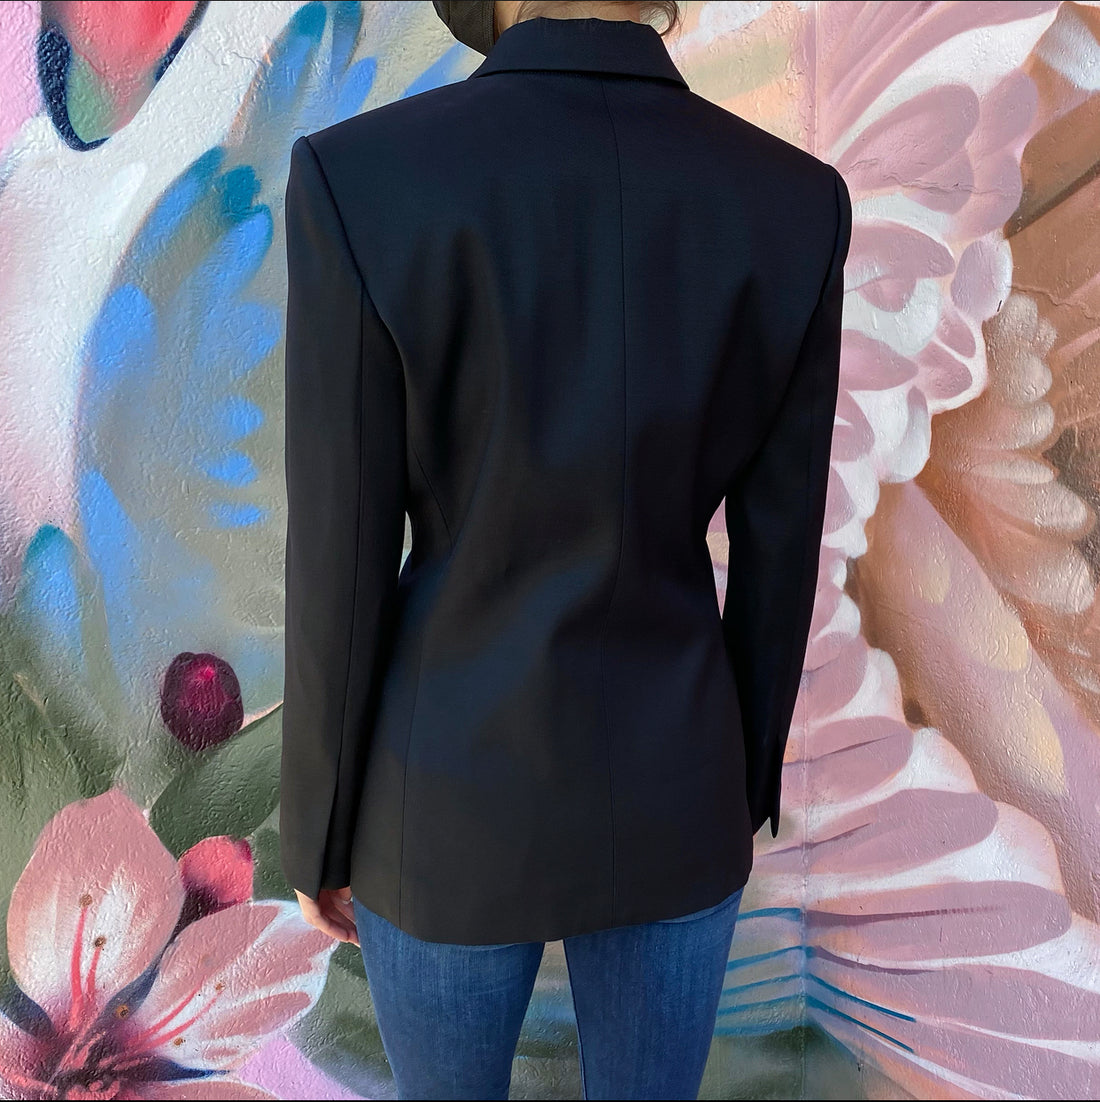 Louis Vuitton Black Wool Structured Tuxedo Blazer Jacket Size 8/40